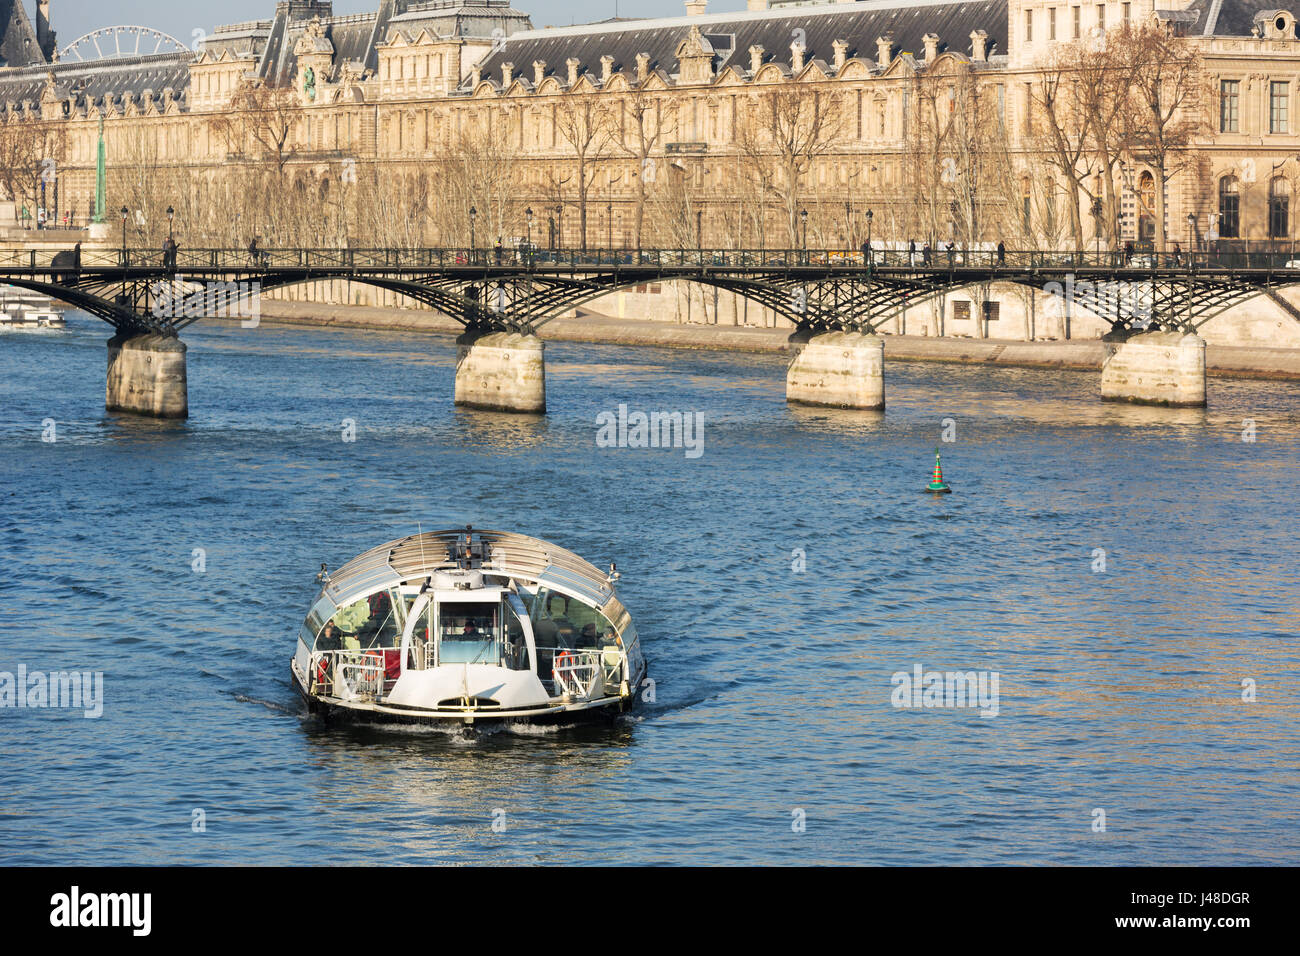 Ponti sul Fiume Senna e le navi da passeggeri in un veicolo per trasporto pubblico a Parigi. Foto Stock